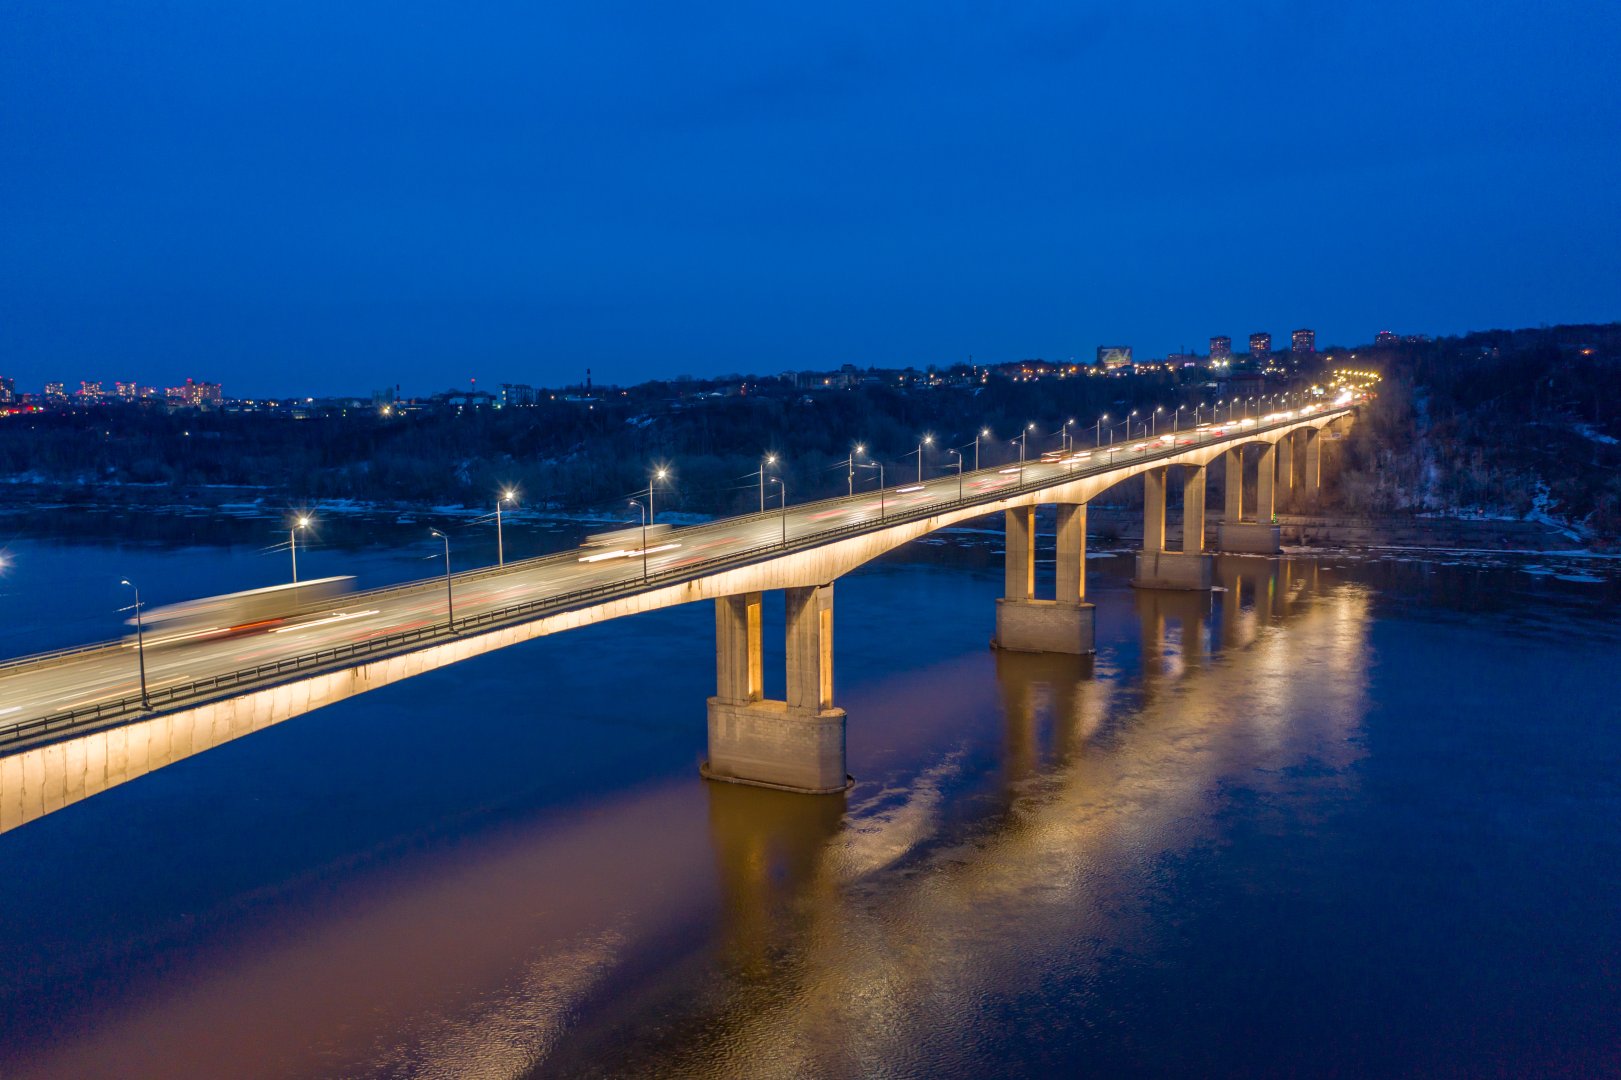 Архитектурная подсветка украсила Мызинский мост в Нижнем Новгороде